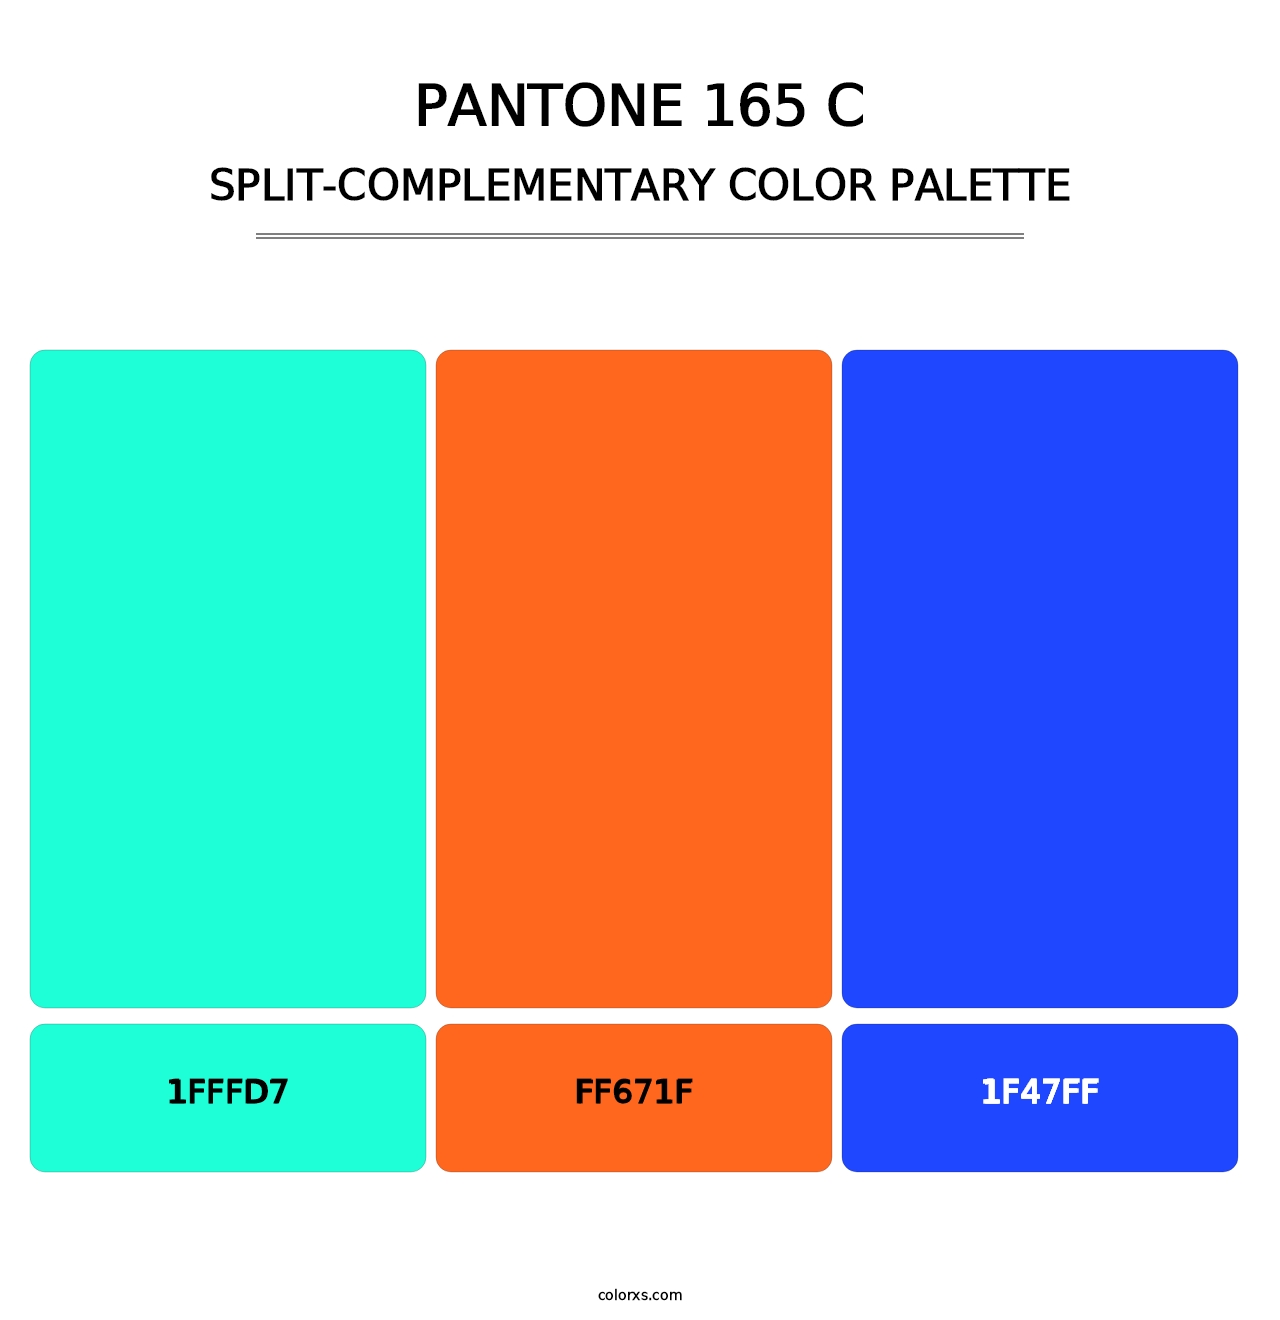 PANTONE 165 C - Split-Complementary Color Palette